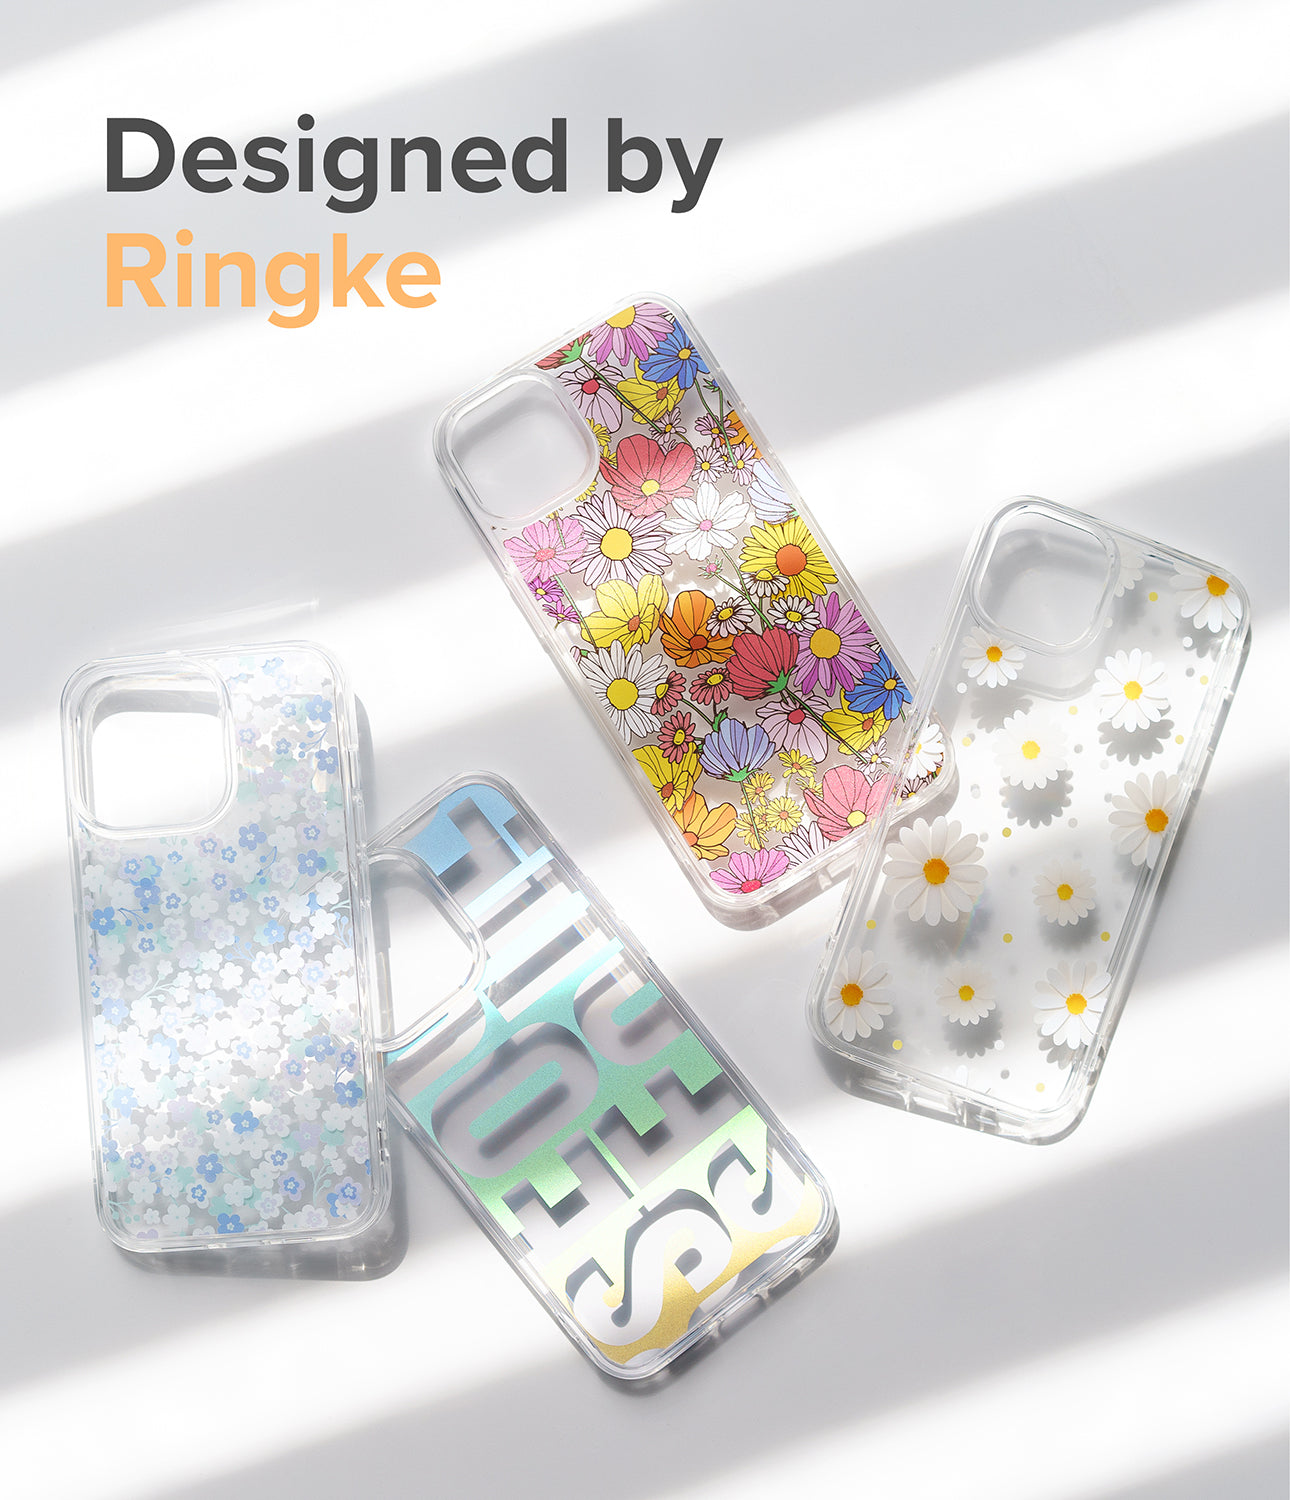 iPhone 13 Case | Fusion Design